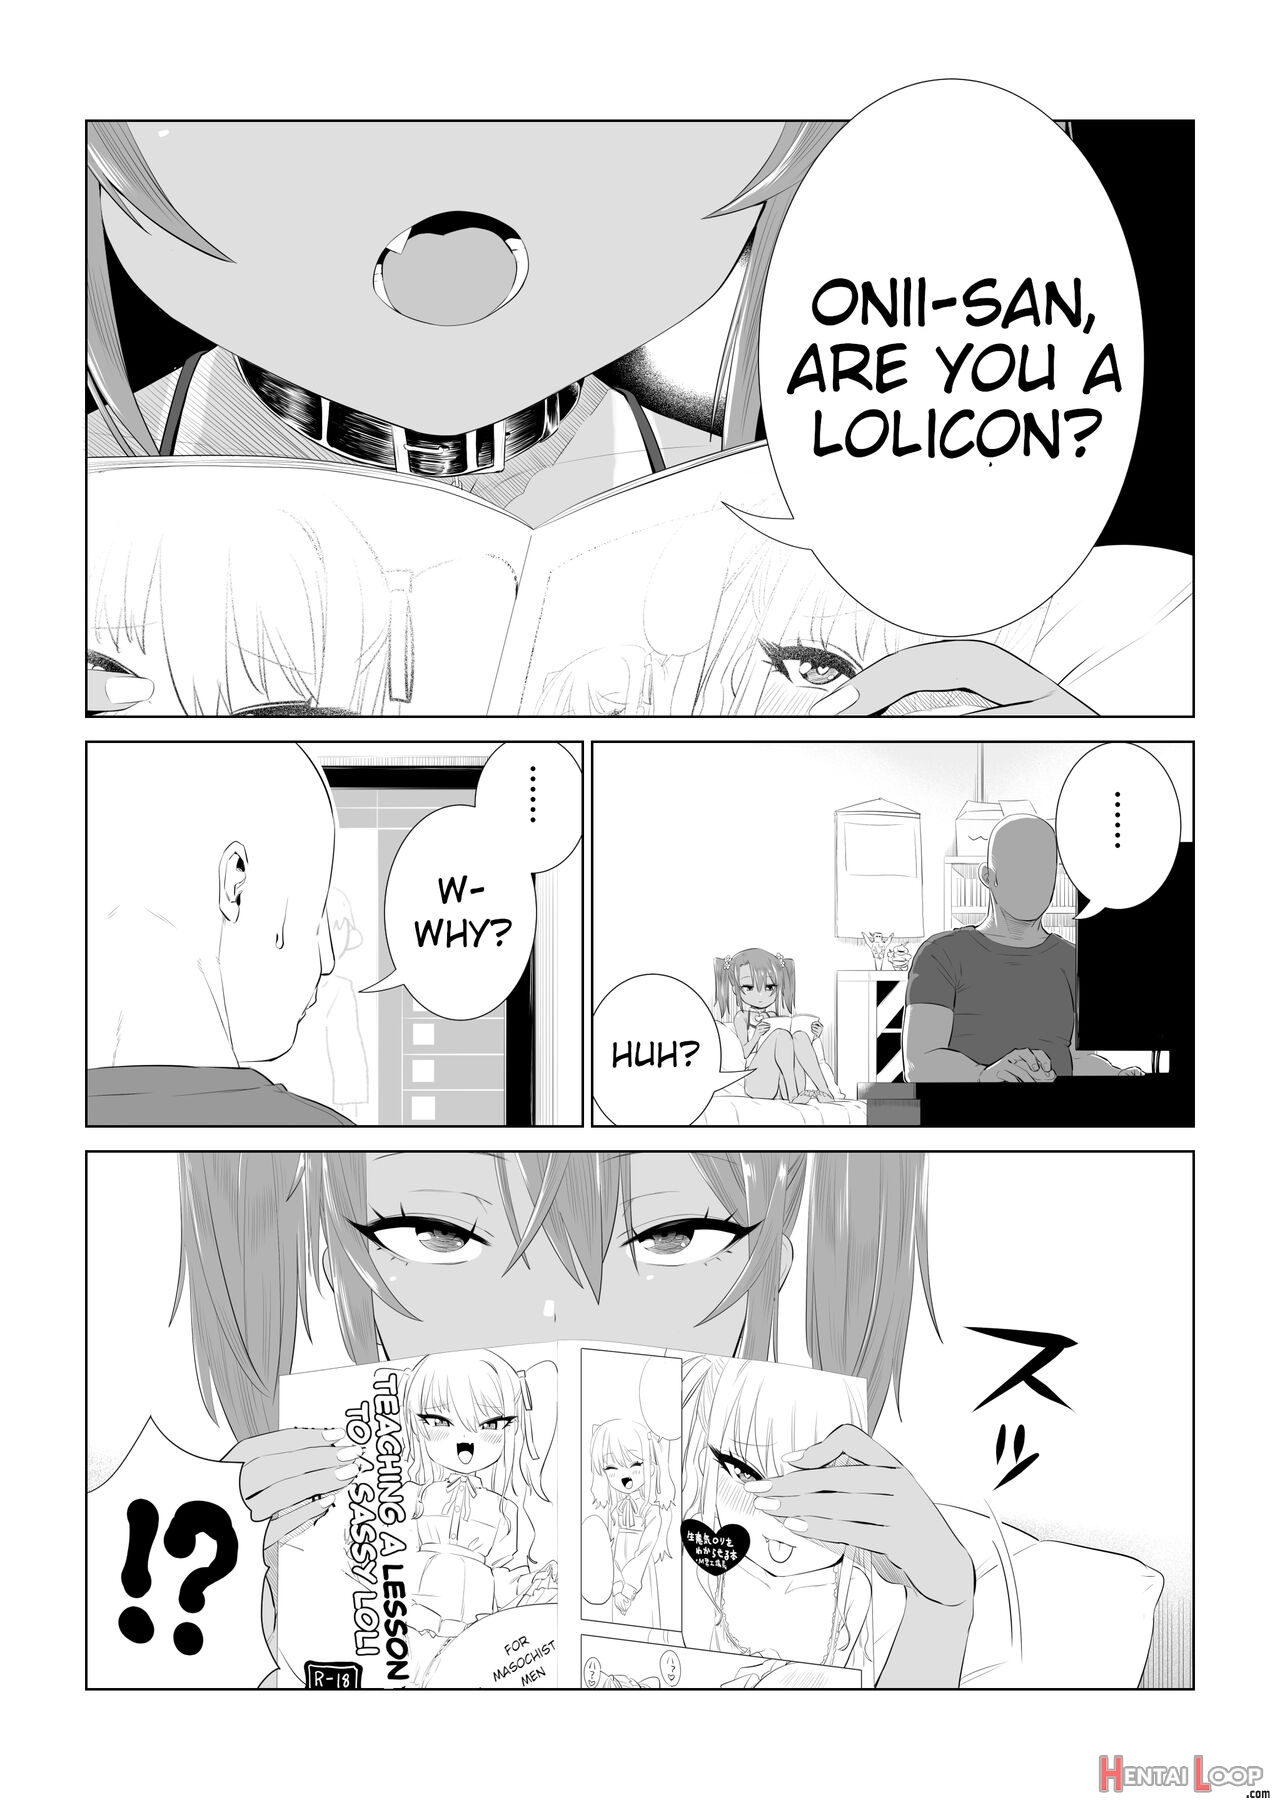 Yuma-chan's Worries page 1